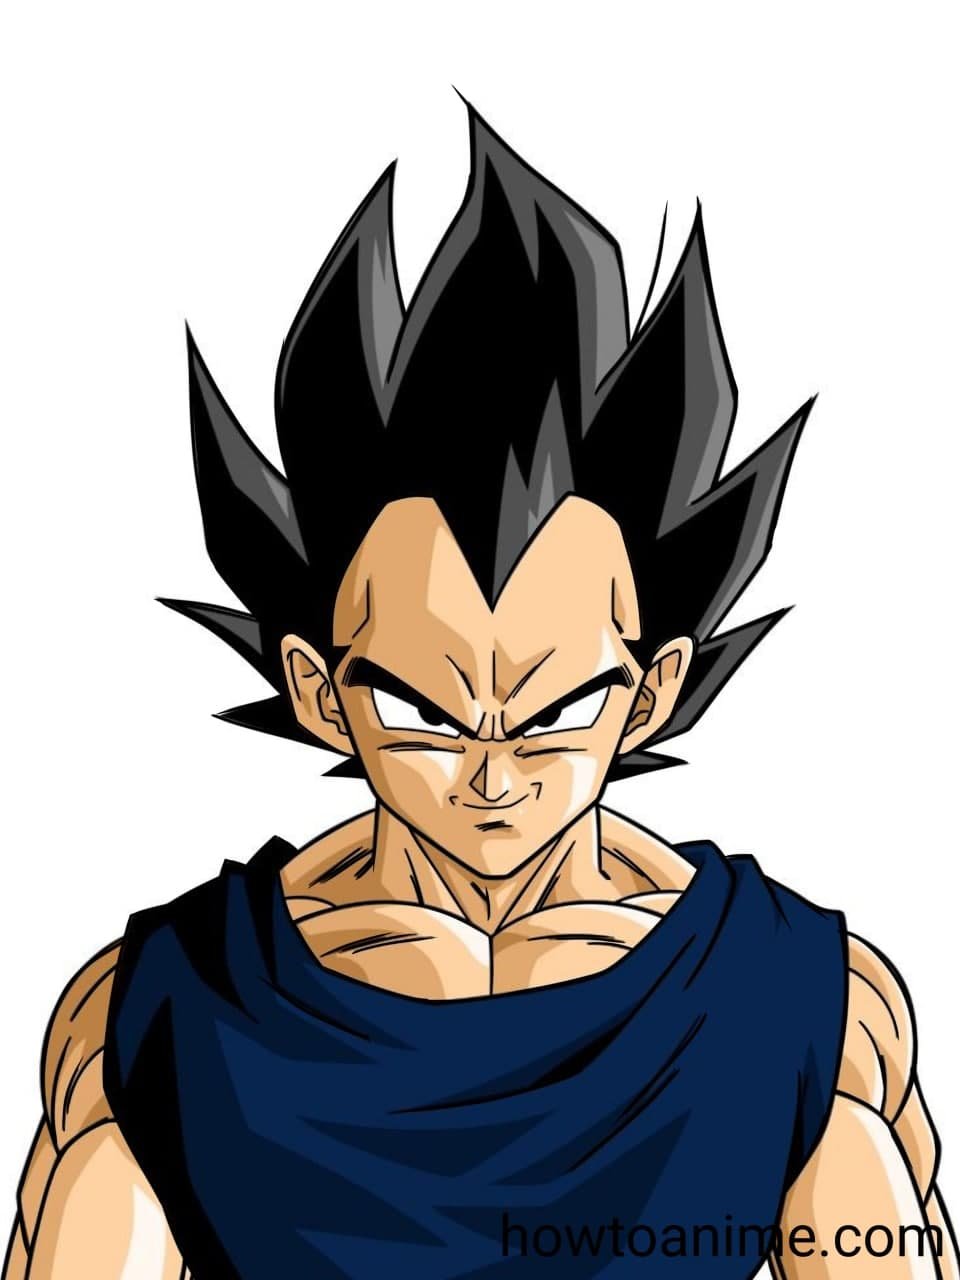 Super Saiyan Infinity Goku Is Born. Dragon Ball Super, By Prince Vegeta